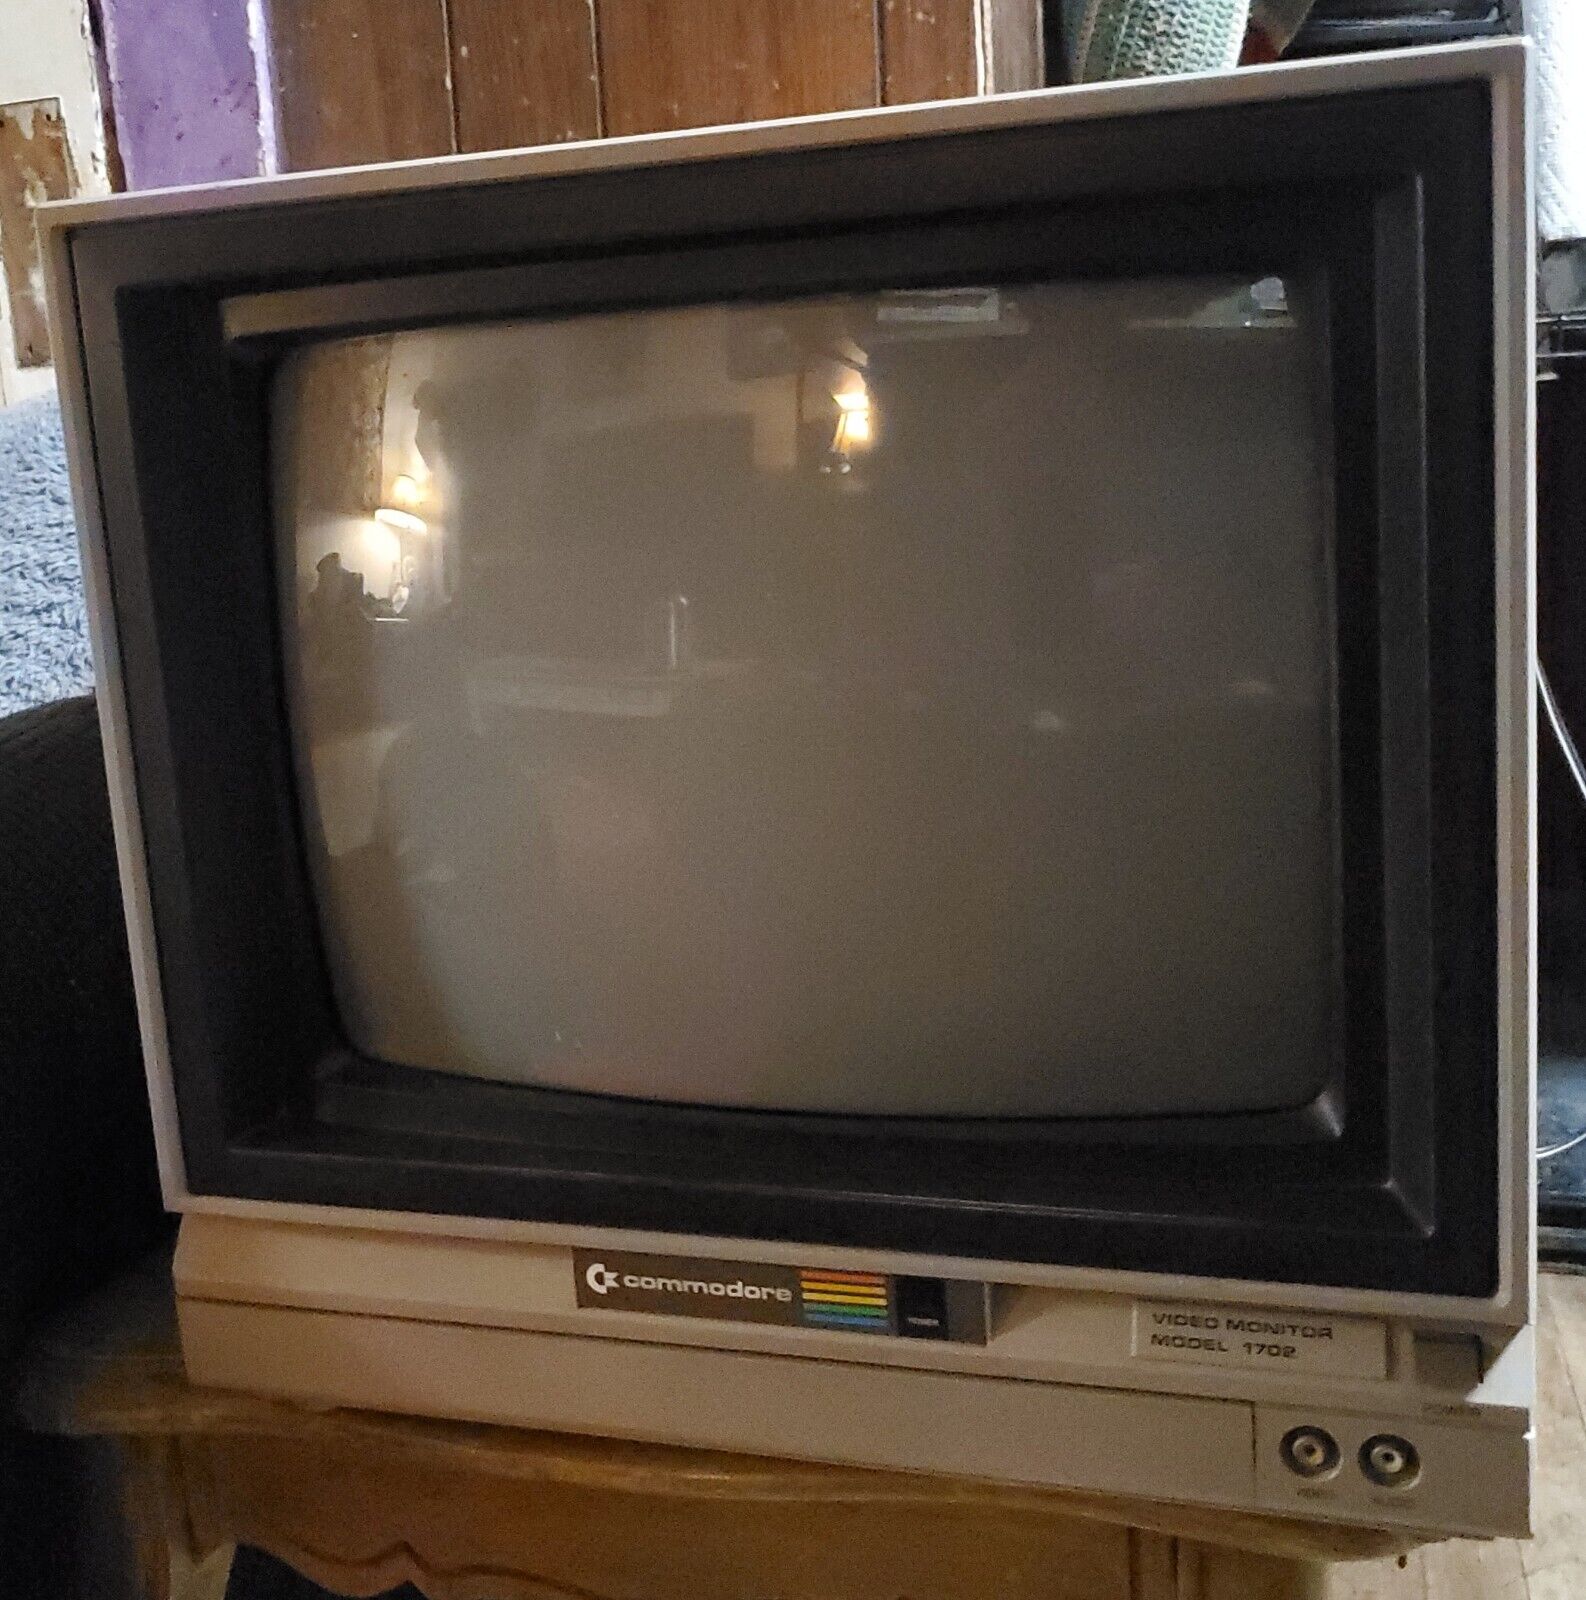 1984 Commodore 64 home Computer Video Color Monitor Model 1702 